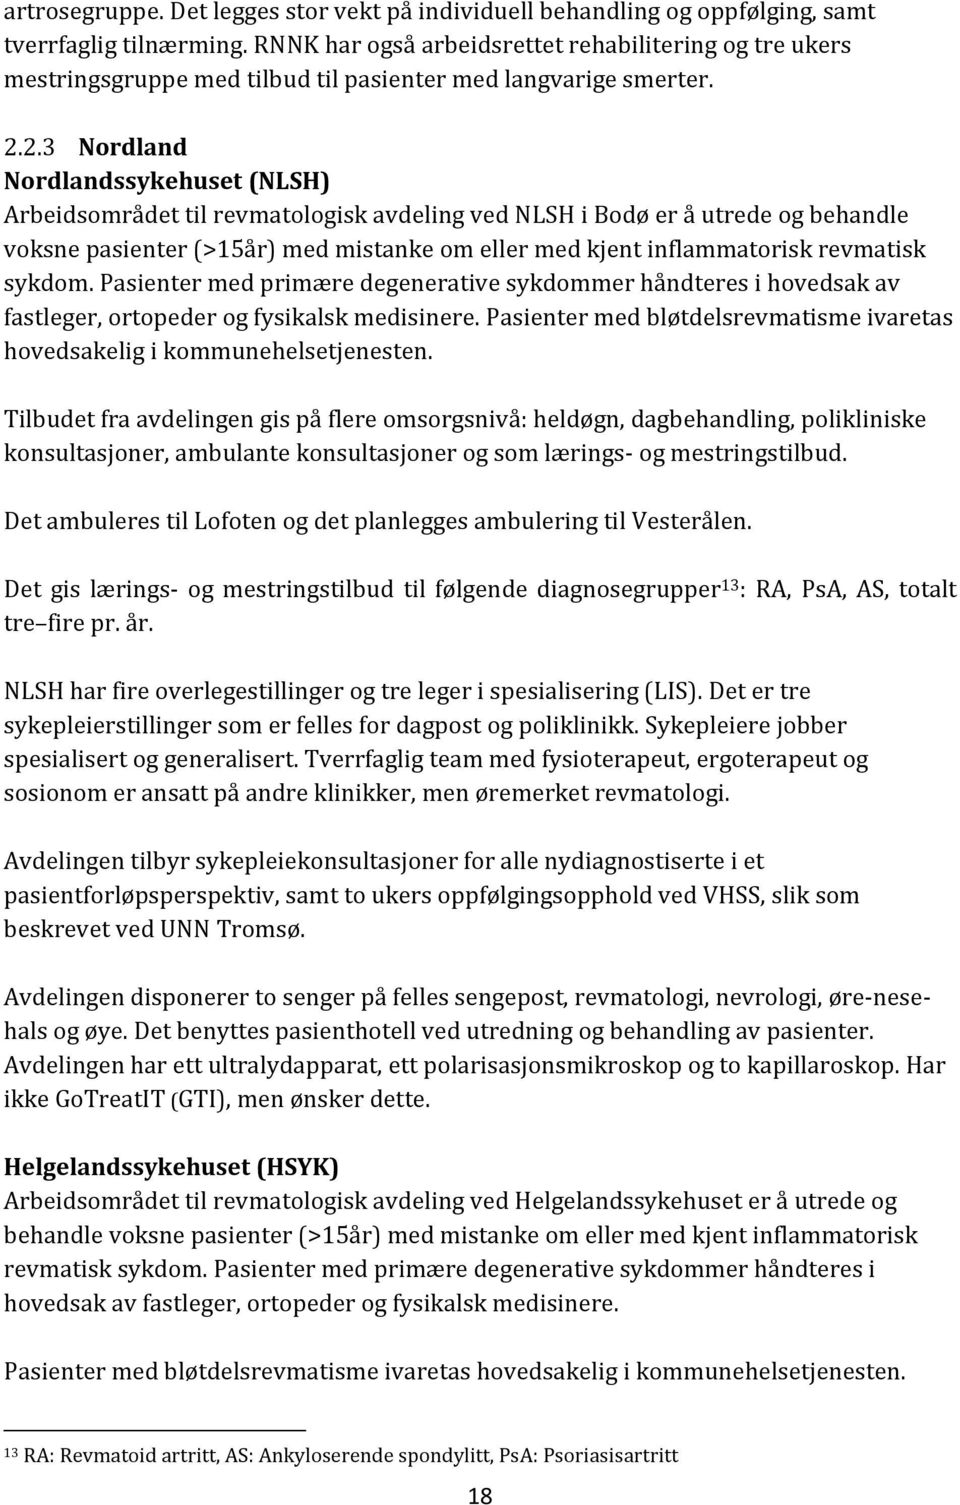 2.3 Nordland Nordlandssykehuset (NLSH) Arbeidsområdet til revmatologisk avdeling ved NLSH i Bodø er å utrede og behandle voksne pasienter (>15år) med mistanke om eller med kjent inflammatorisk